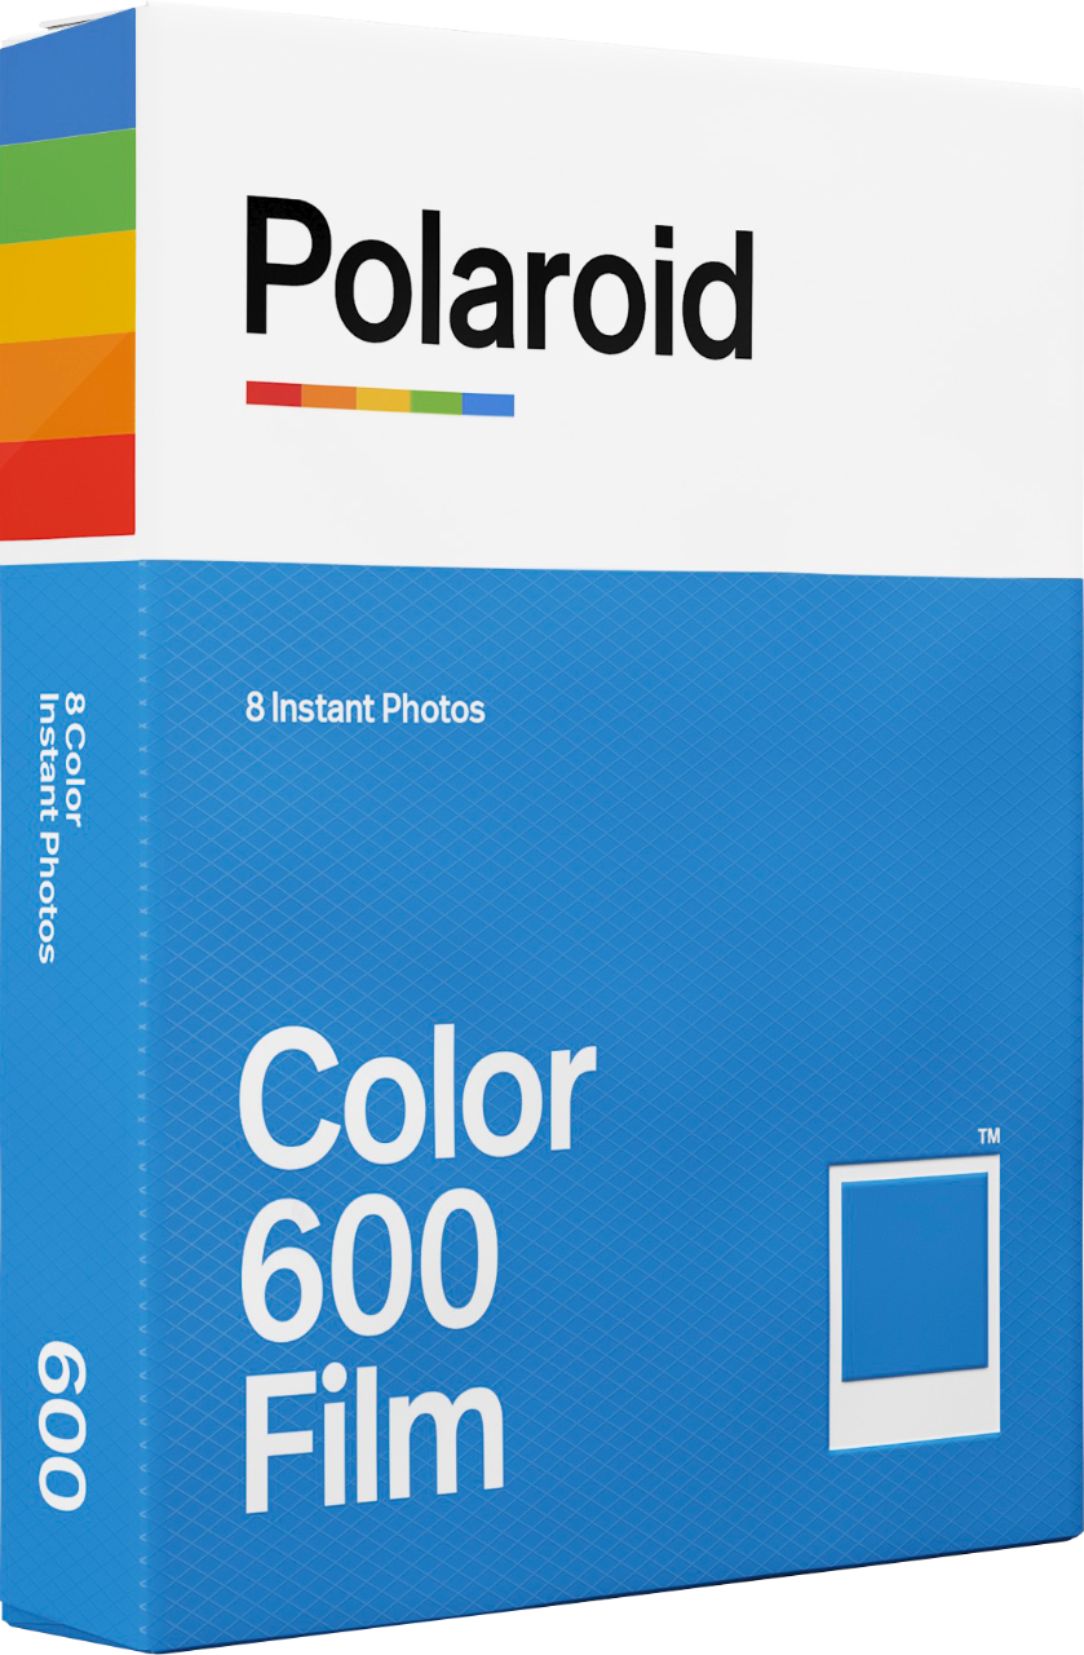 Polaroid Originals 600 Color Film, 8 Instant Photos